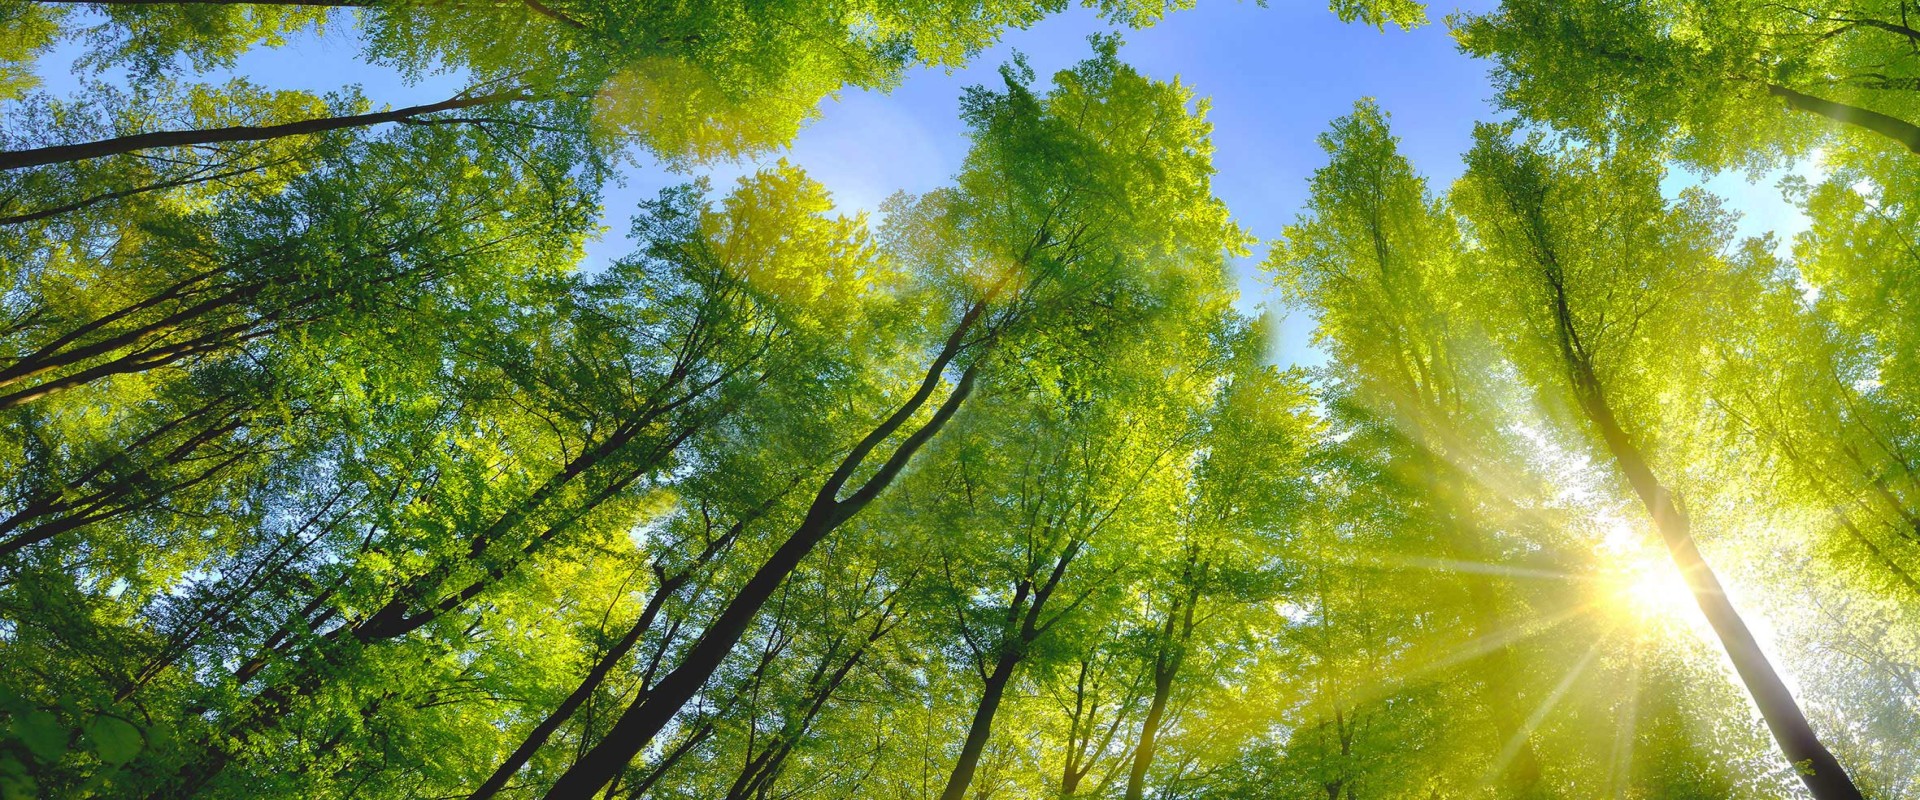  Лиственный лес в солнечном свете под голубым небом